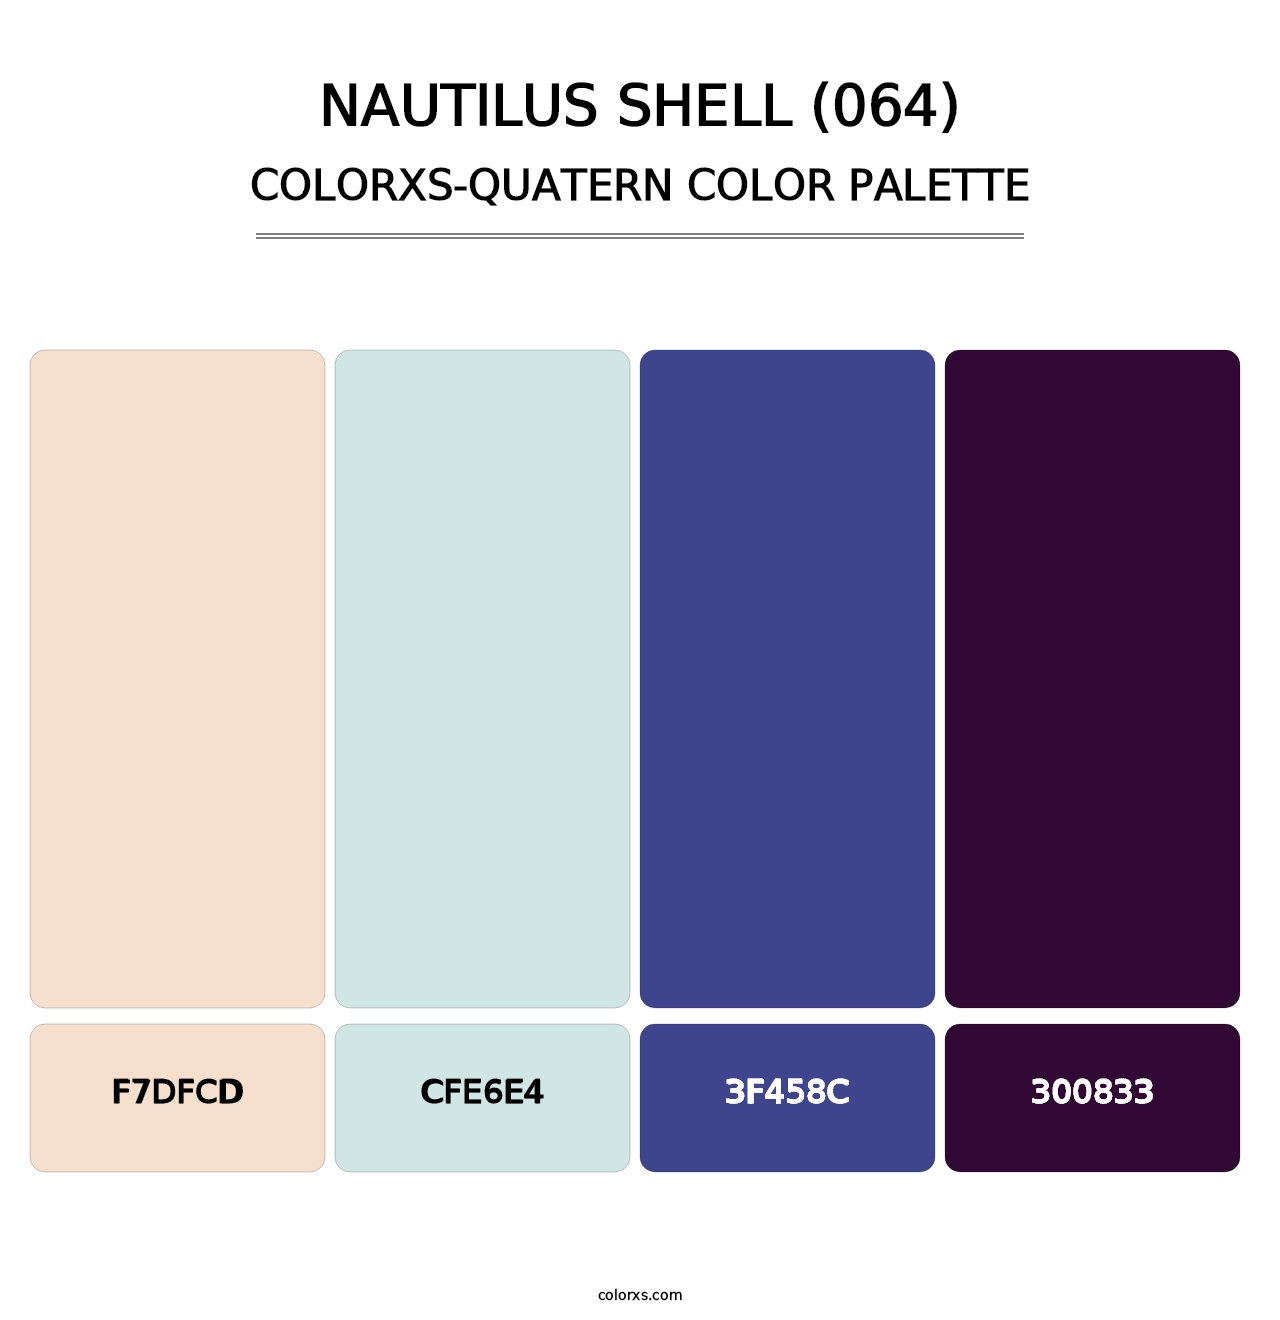 Nautilus Shell (064) - Colorxs Quatern Palette